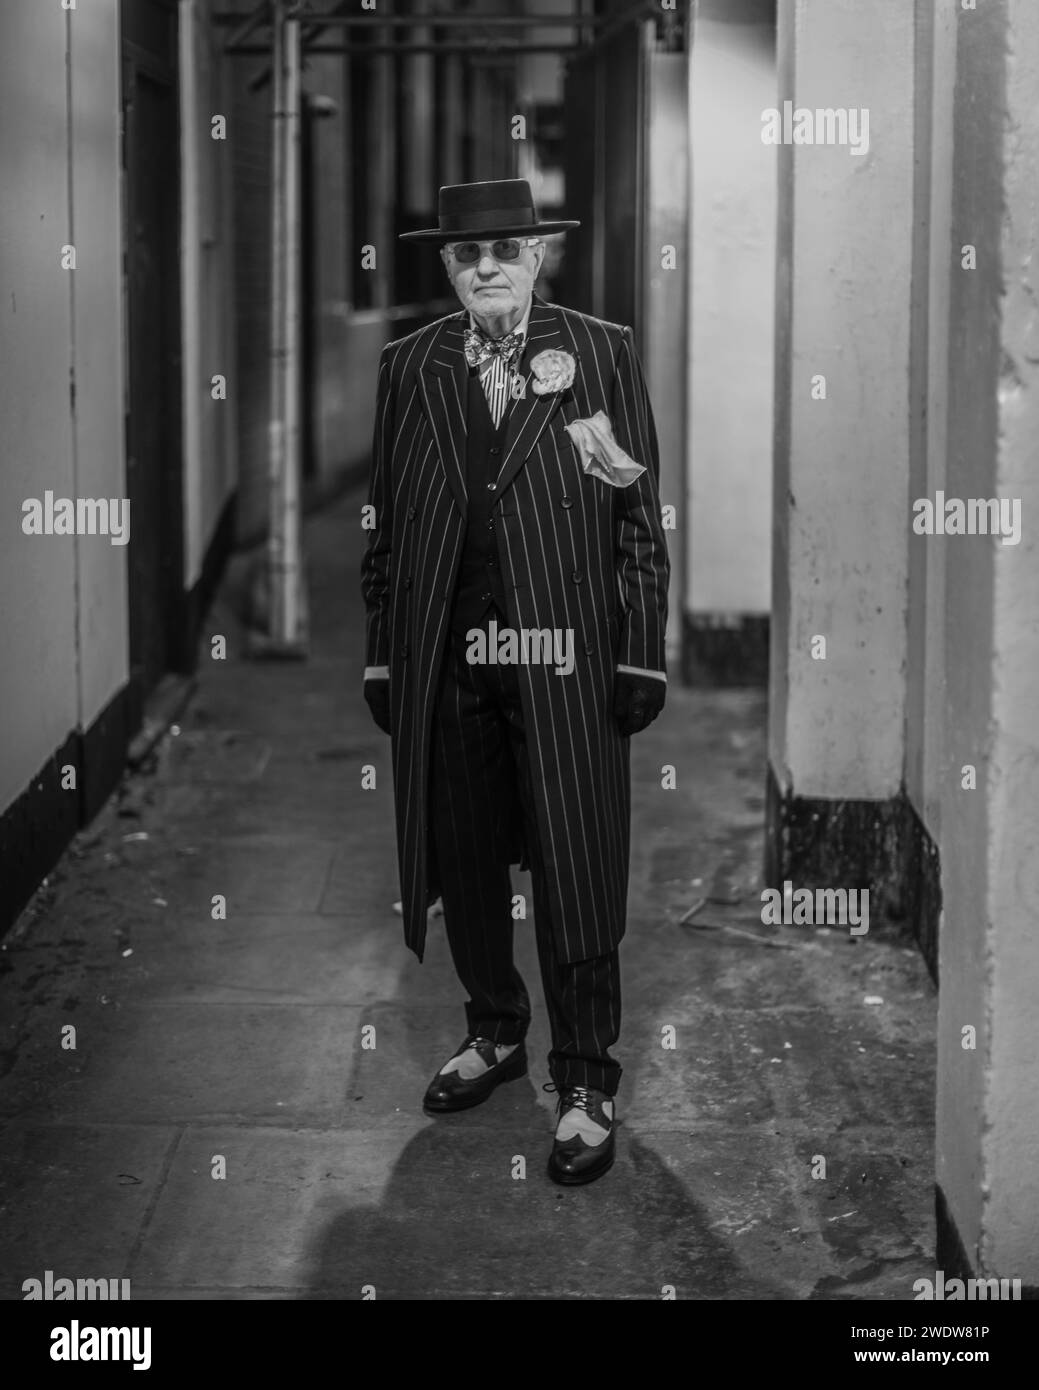 Immagine in bianco e nero di Soho George, la personalità perfettamente vestita che posa per una fotografia a Londra. Foto Stock